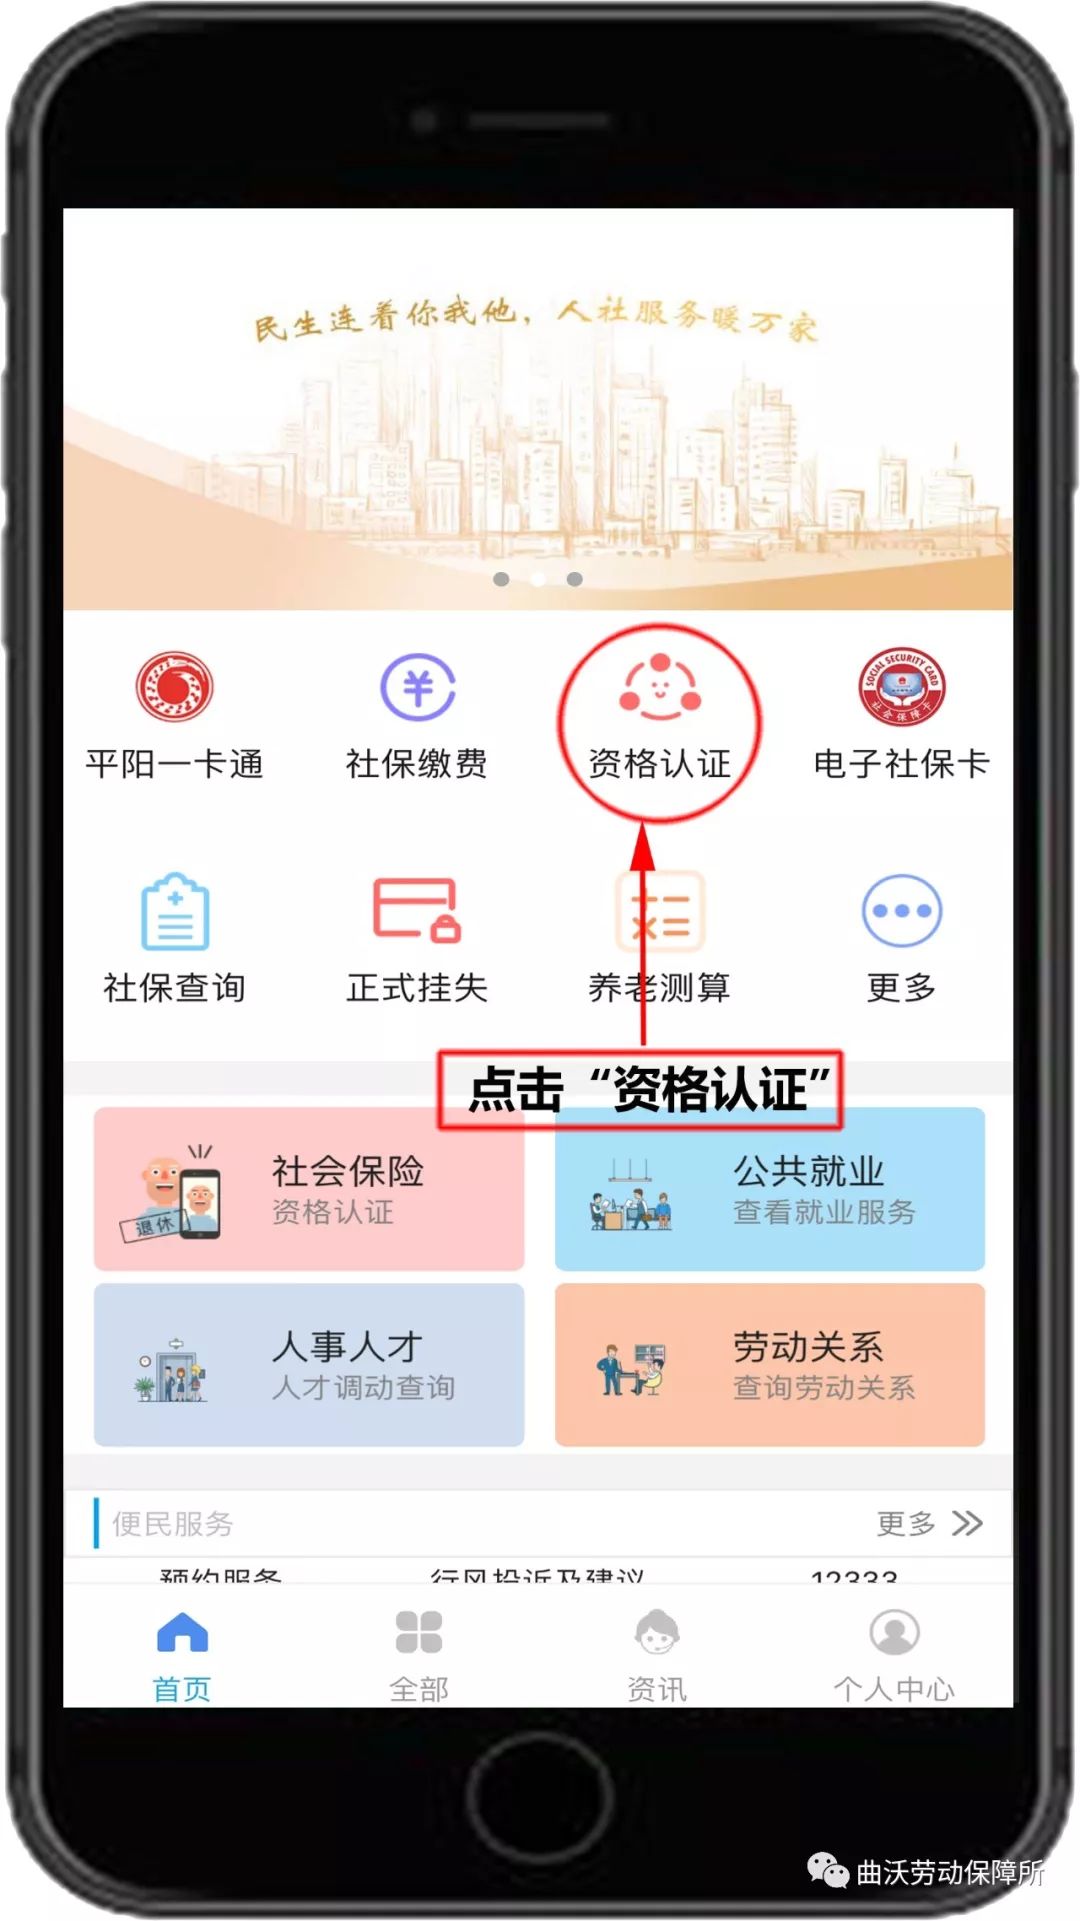 民生山西app60周岁以上领取养老金认证流程